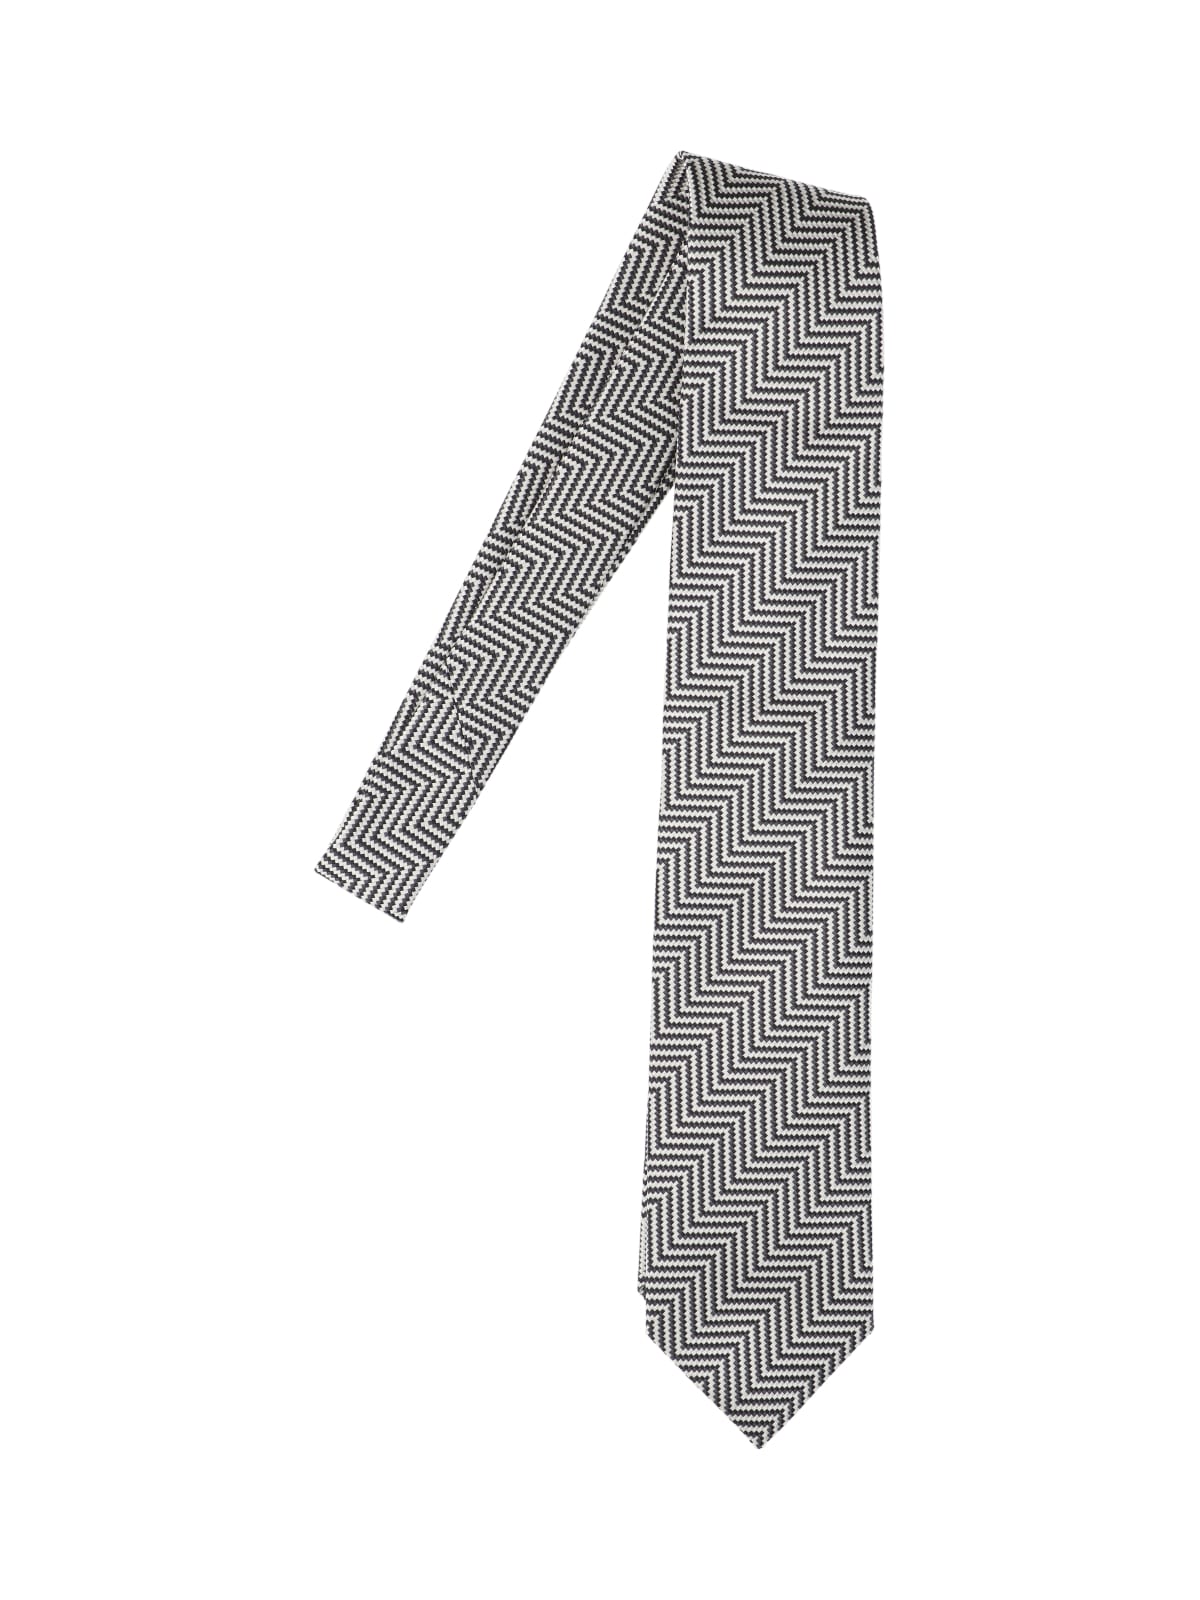 Herringbone Tie